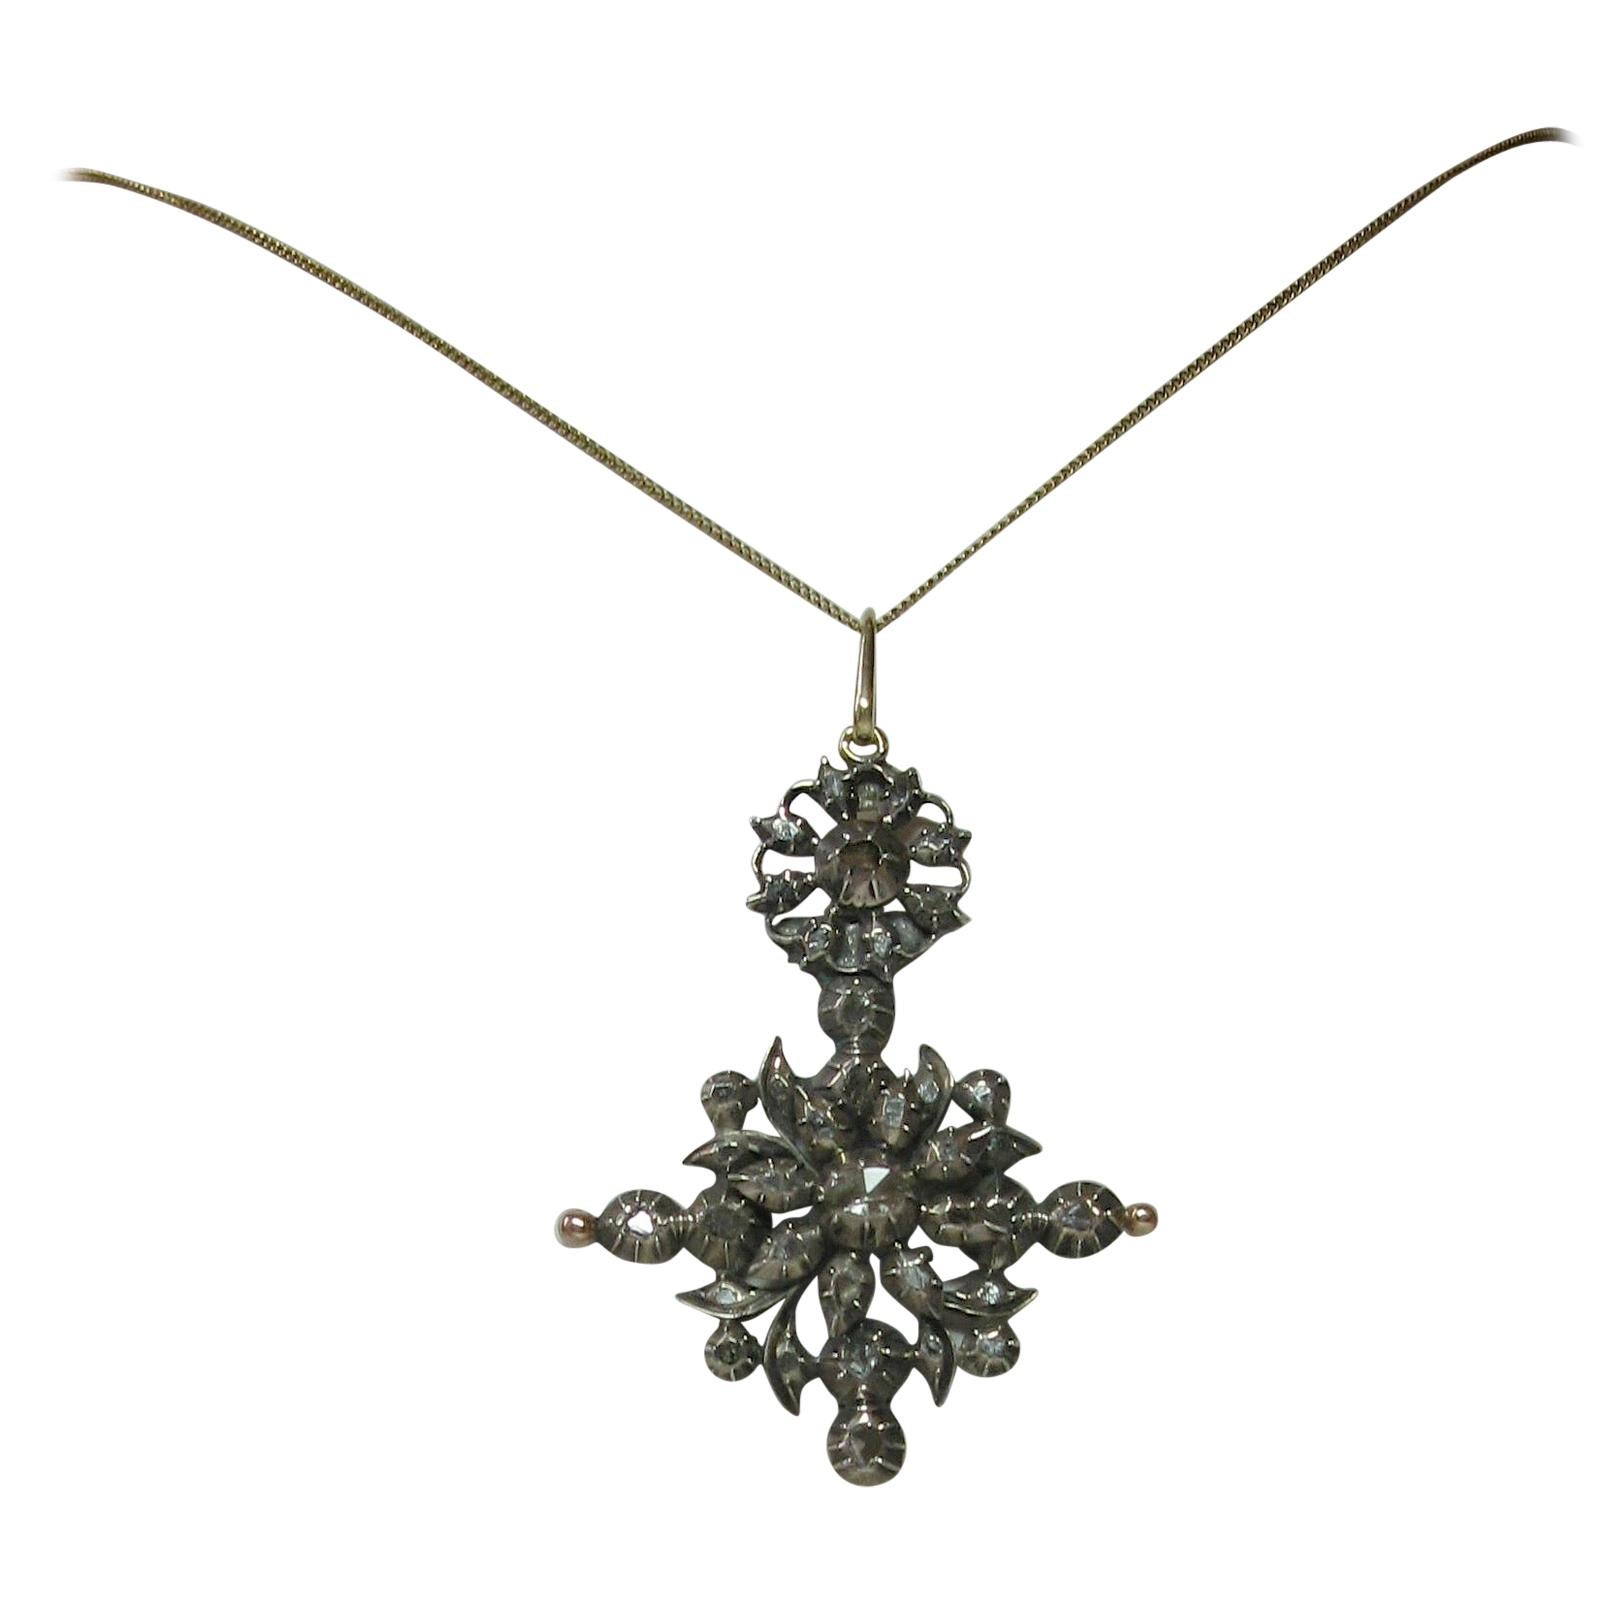 Seltene georgianische 14 Karat Gold niederländische Halskette mit Diamant-Anhänger im Rosenschliff um 1700